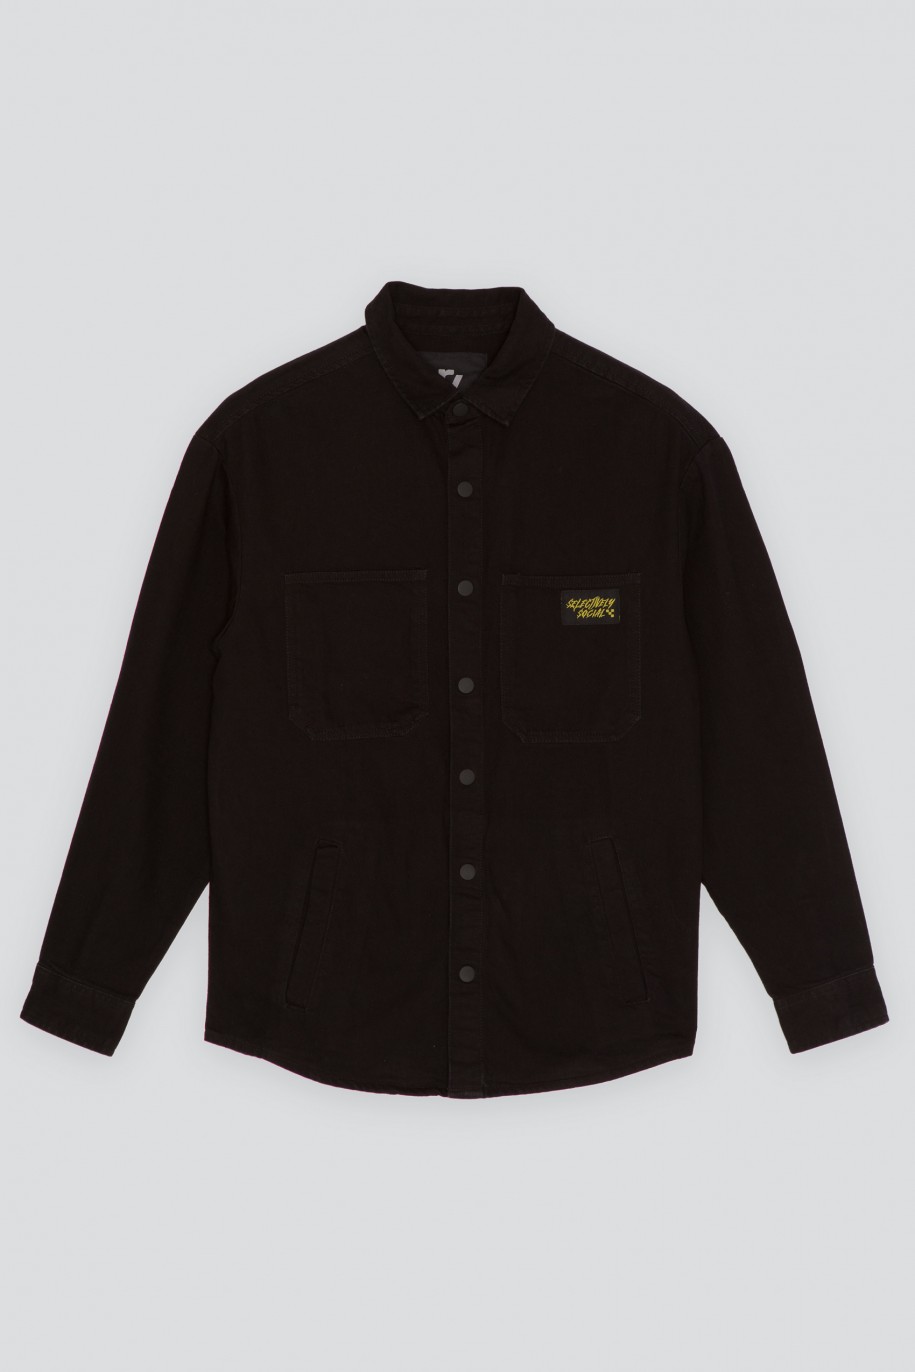 Czarna jeansowa koszula z kieszeniami zapinana na zatrzaski - 45479